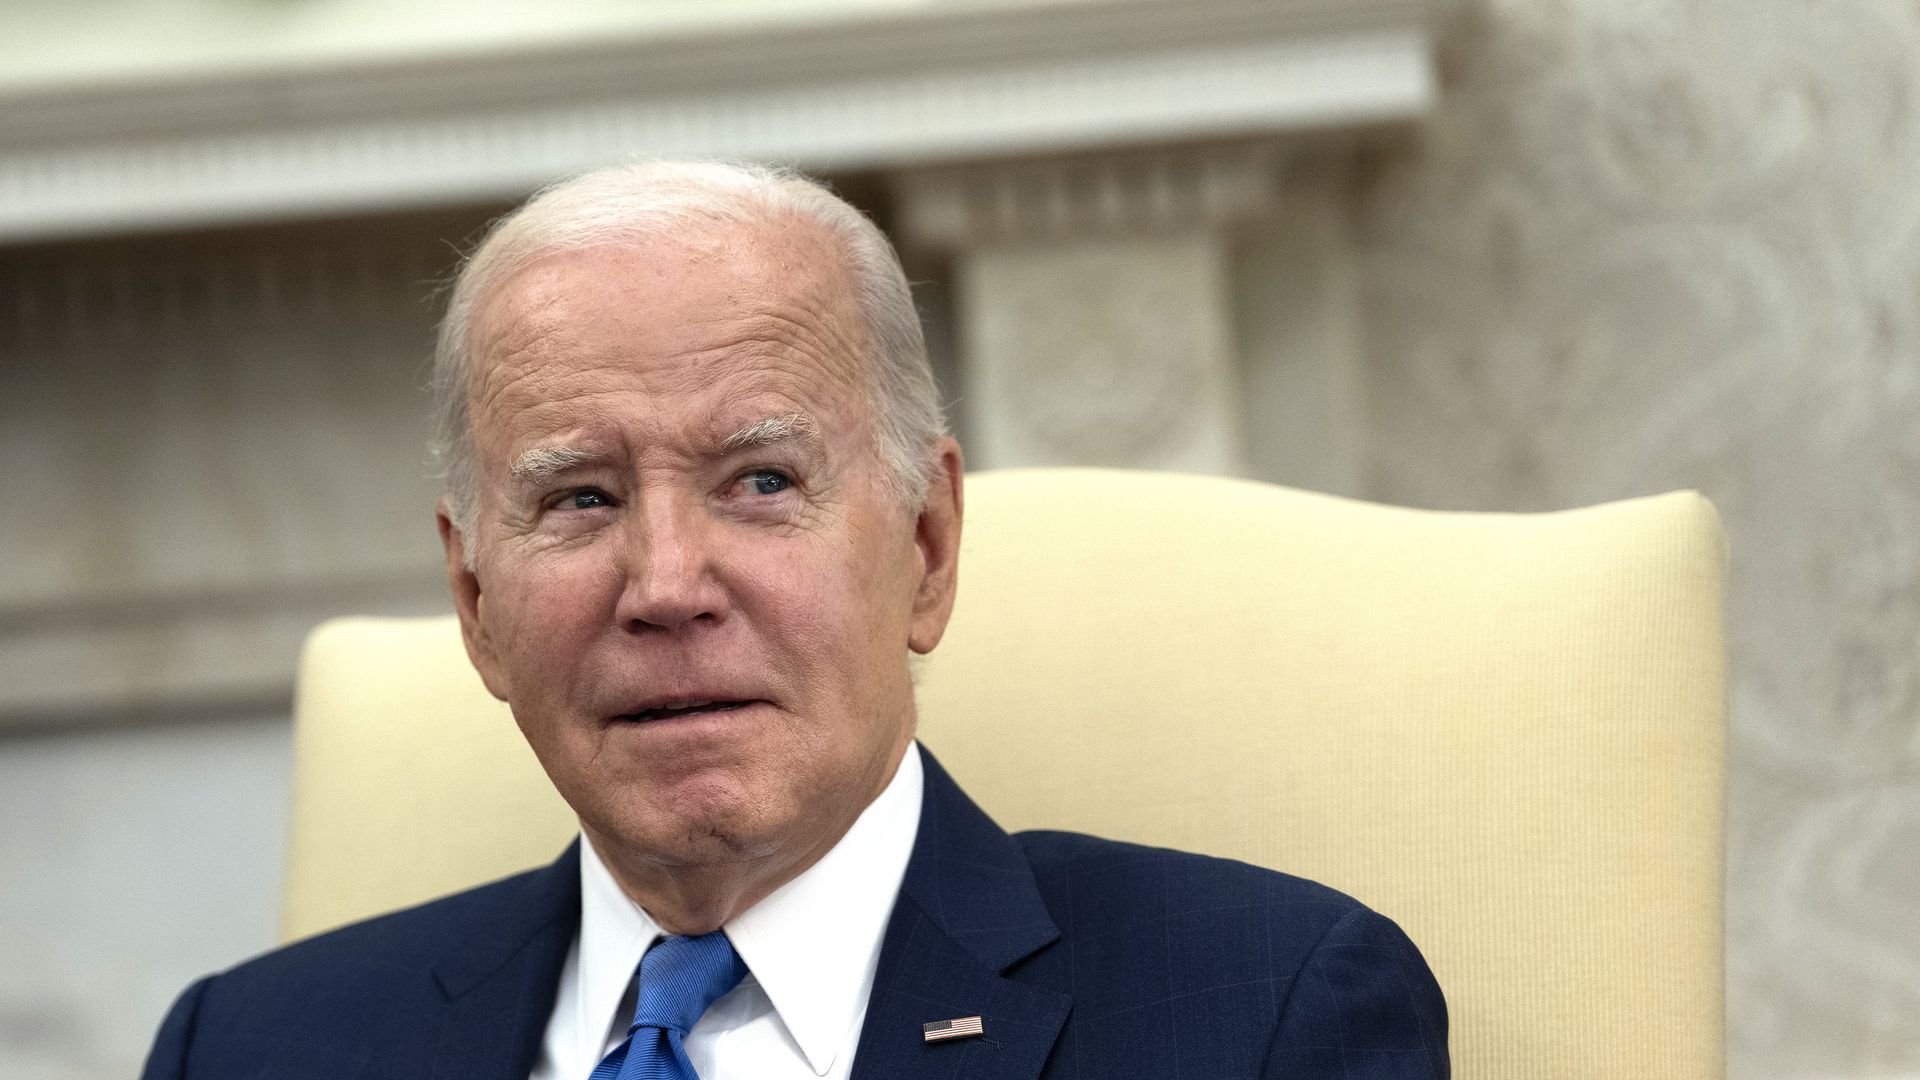 Biden says he believes deal to free dozens of hostages held in Gaza is "going to happen"